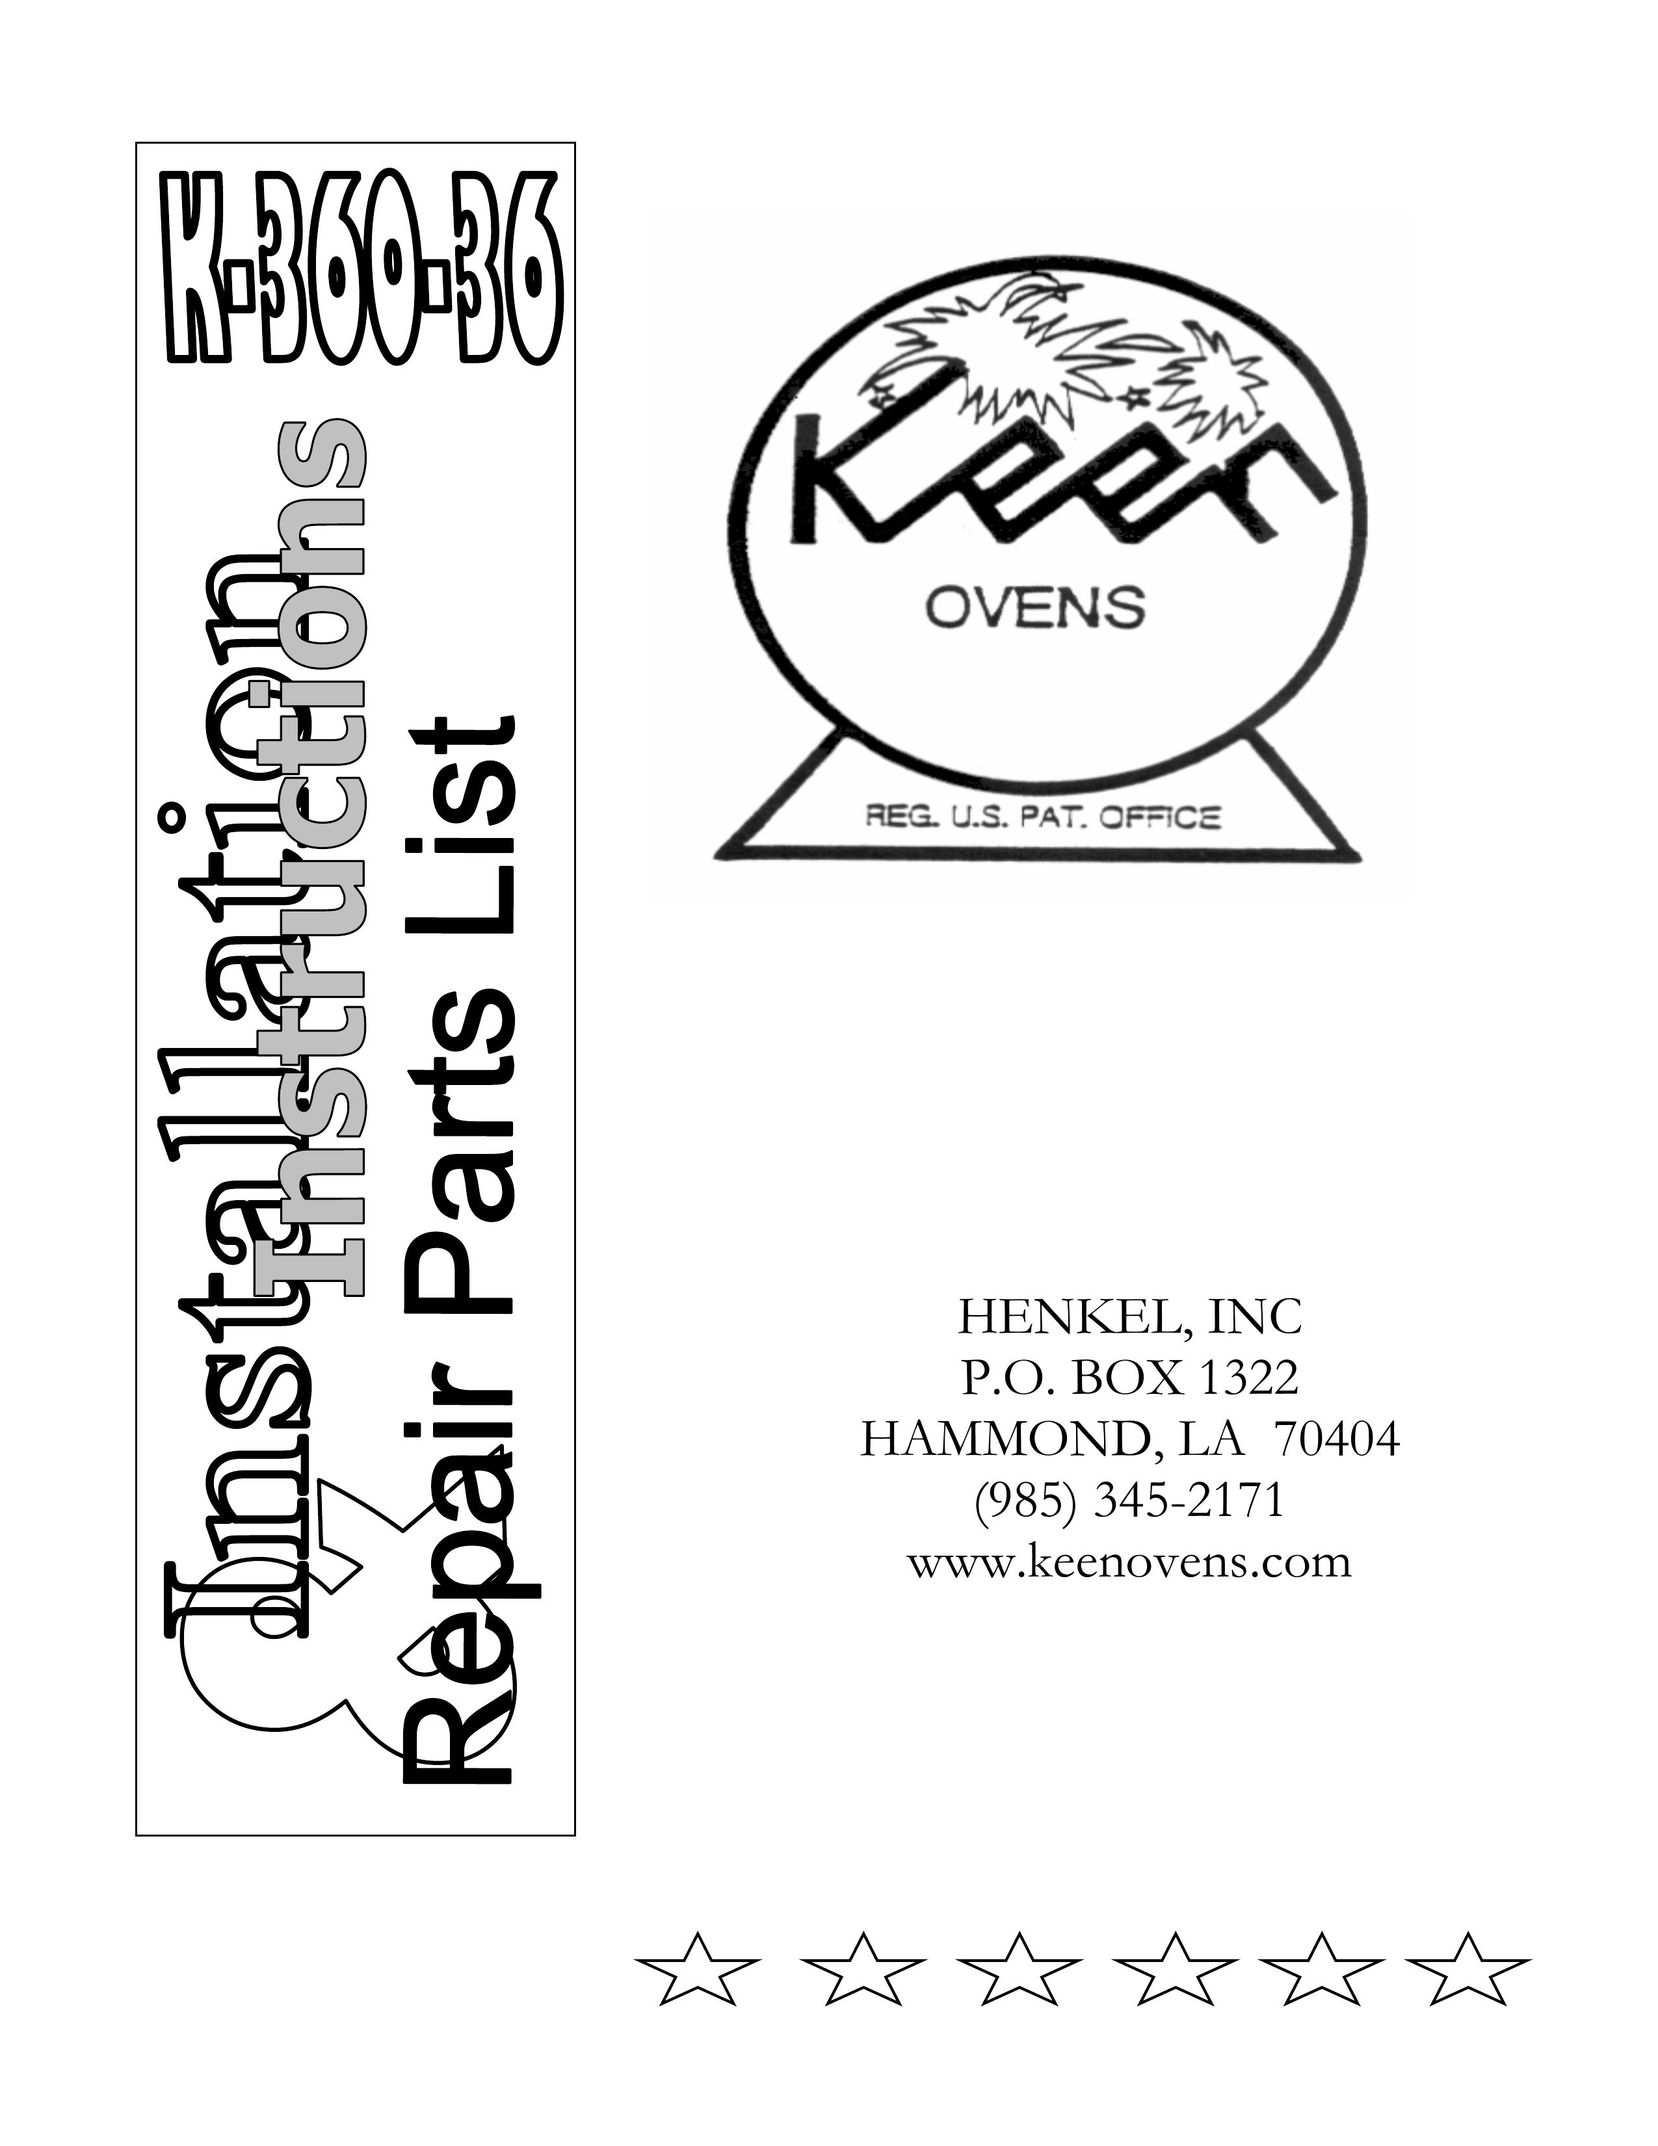 Henkel K-360-36 Oven User Manual